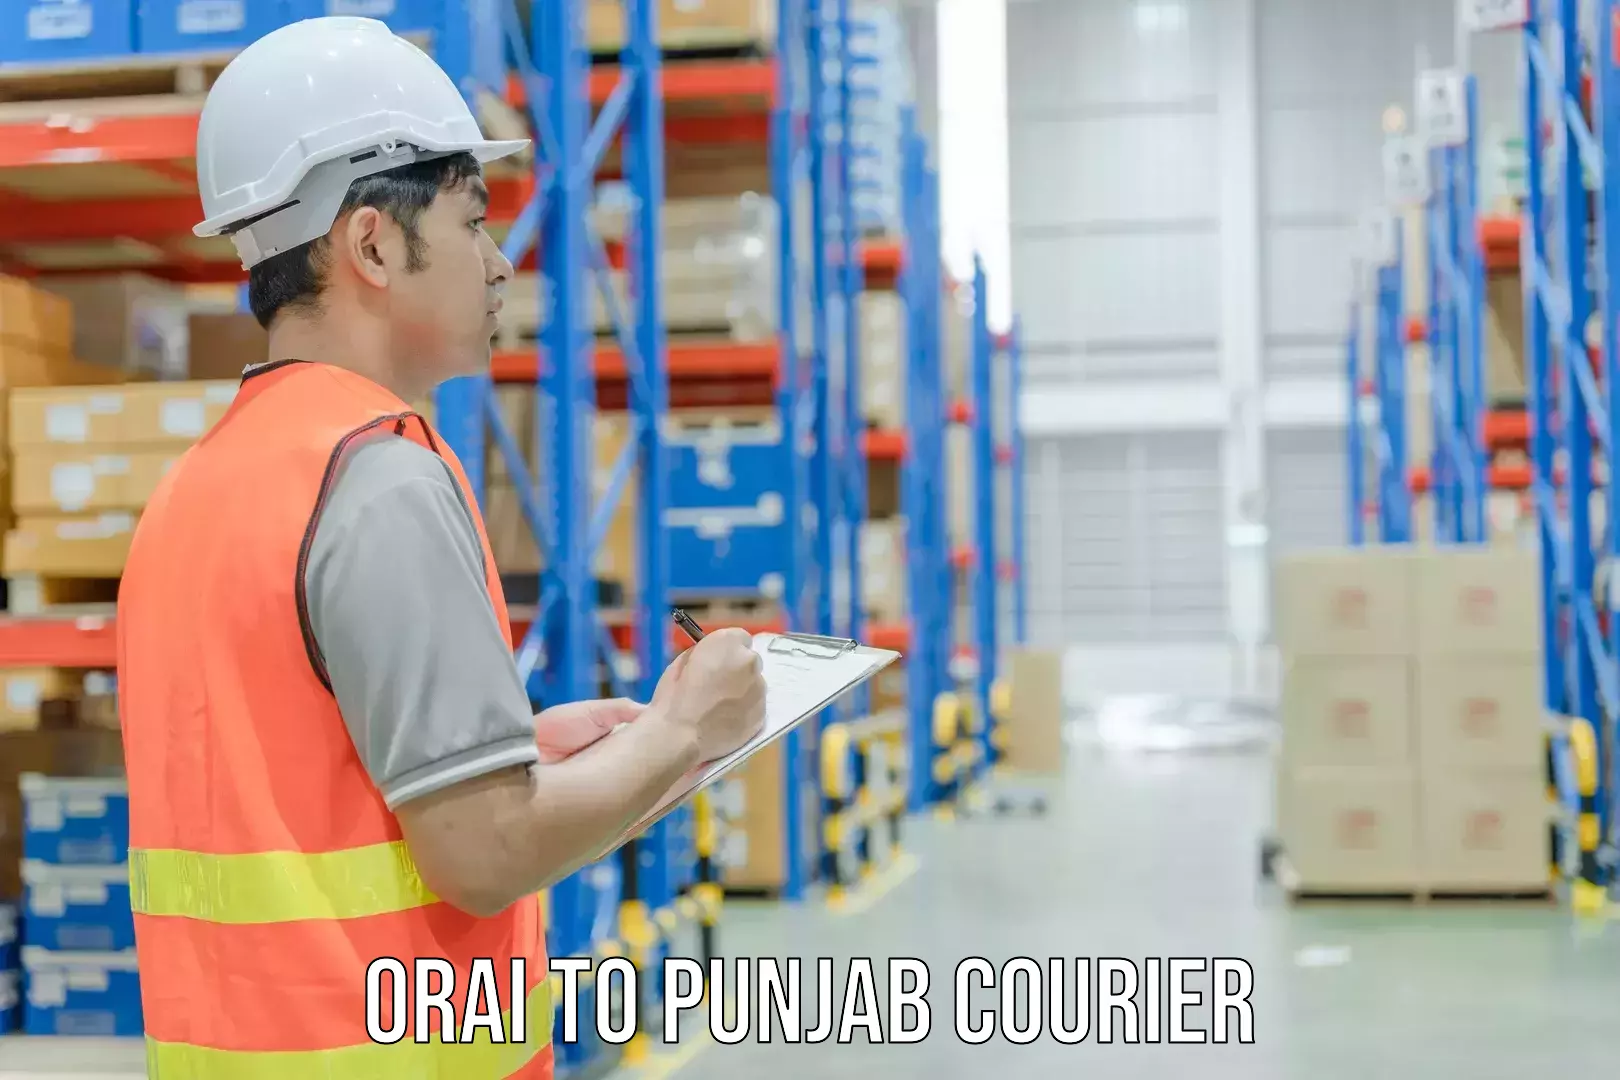 Express courier facilities Orai to Amritsar